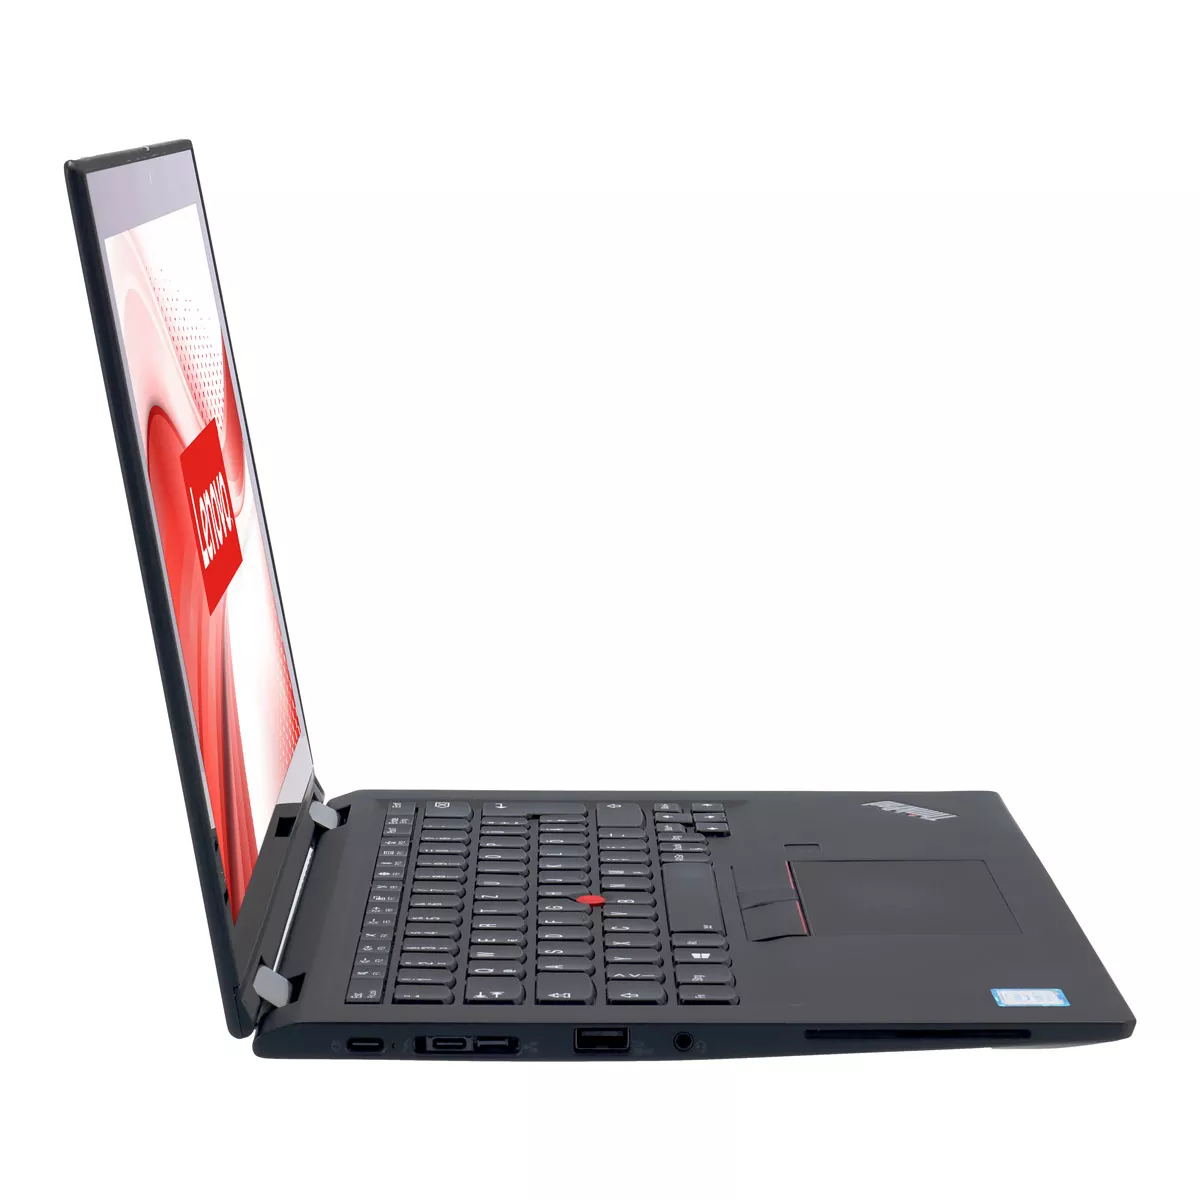 Lenovo ThinkPad X390 Yoga Core i5 8365U Touch 8 GB 240 GB M.2 nVME SSD Webcam B